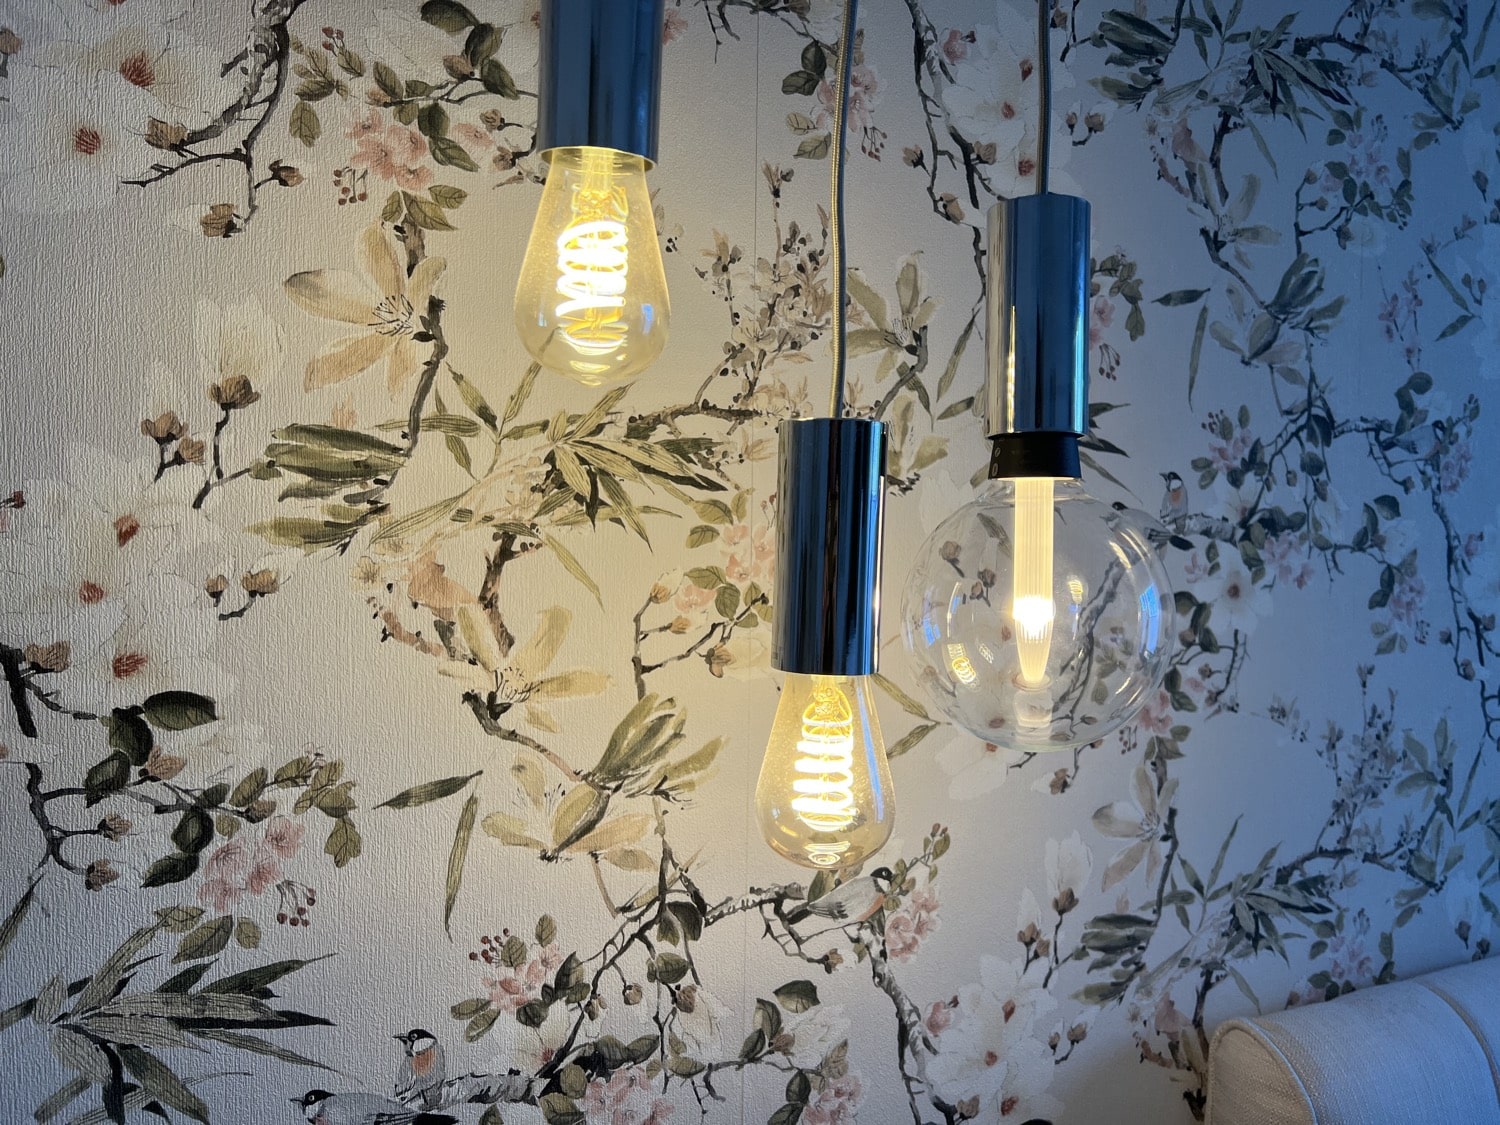 Hueblog: How far can you dim the new Hue Lightguide bulbs?